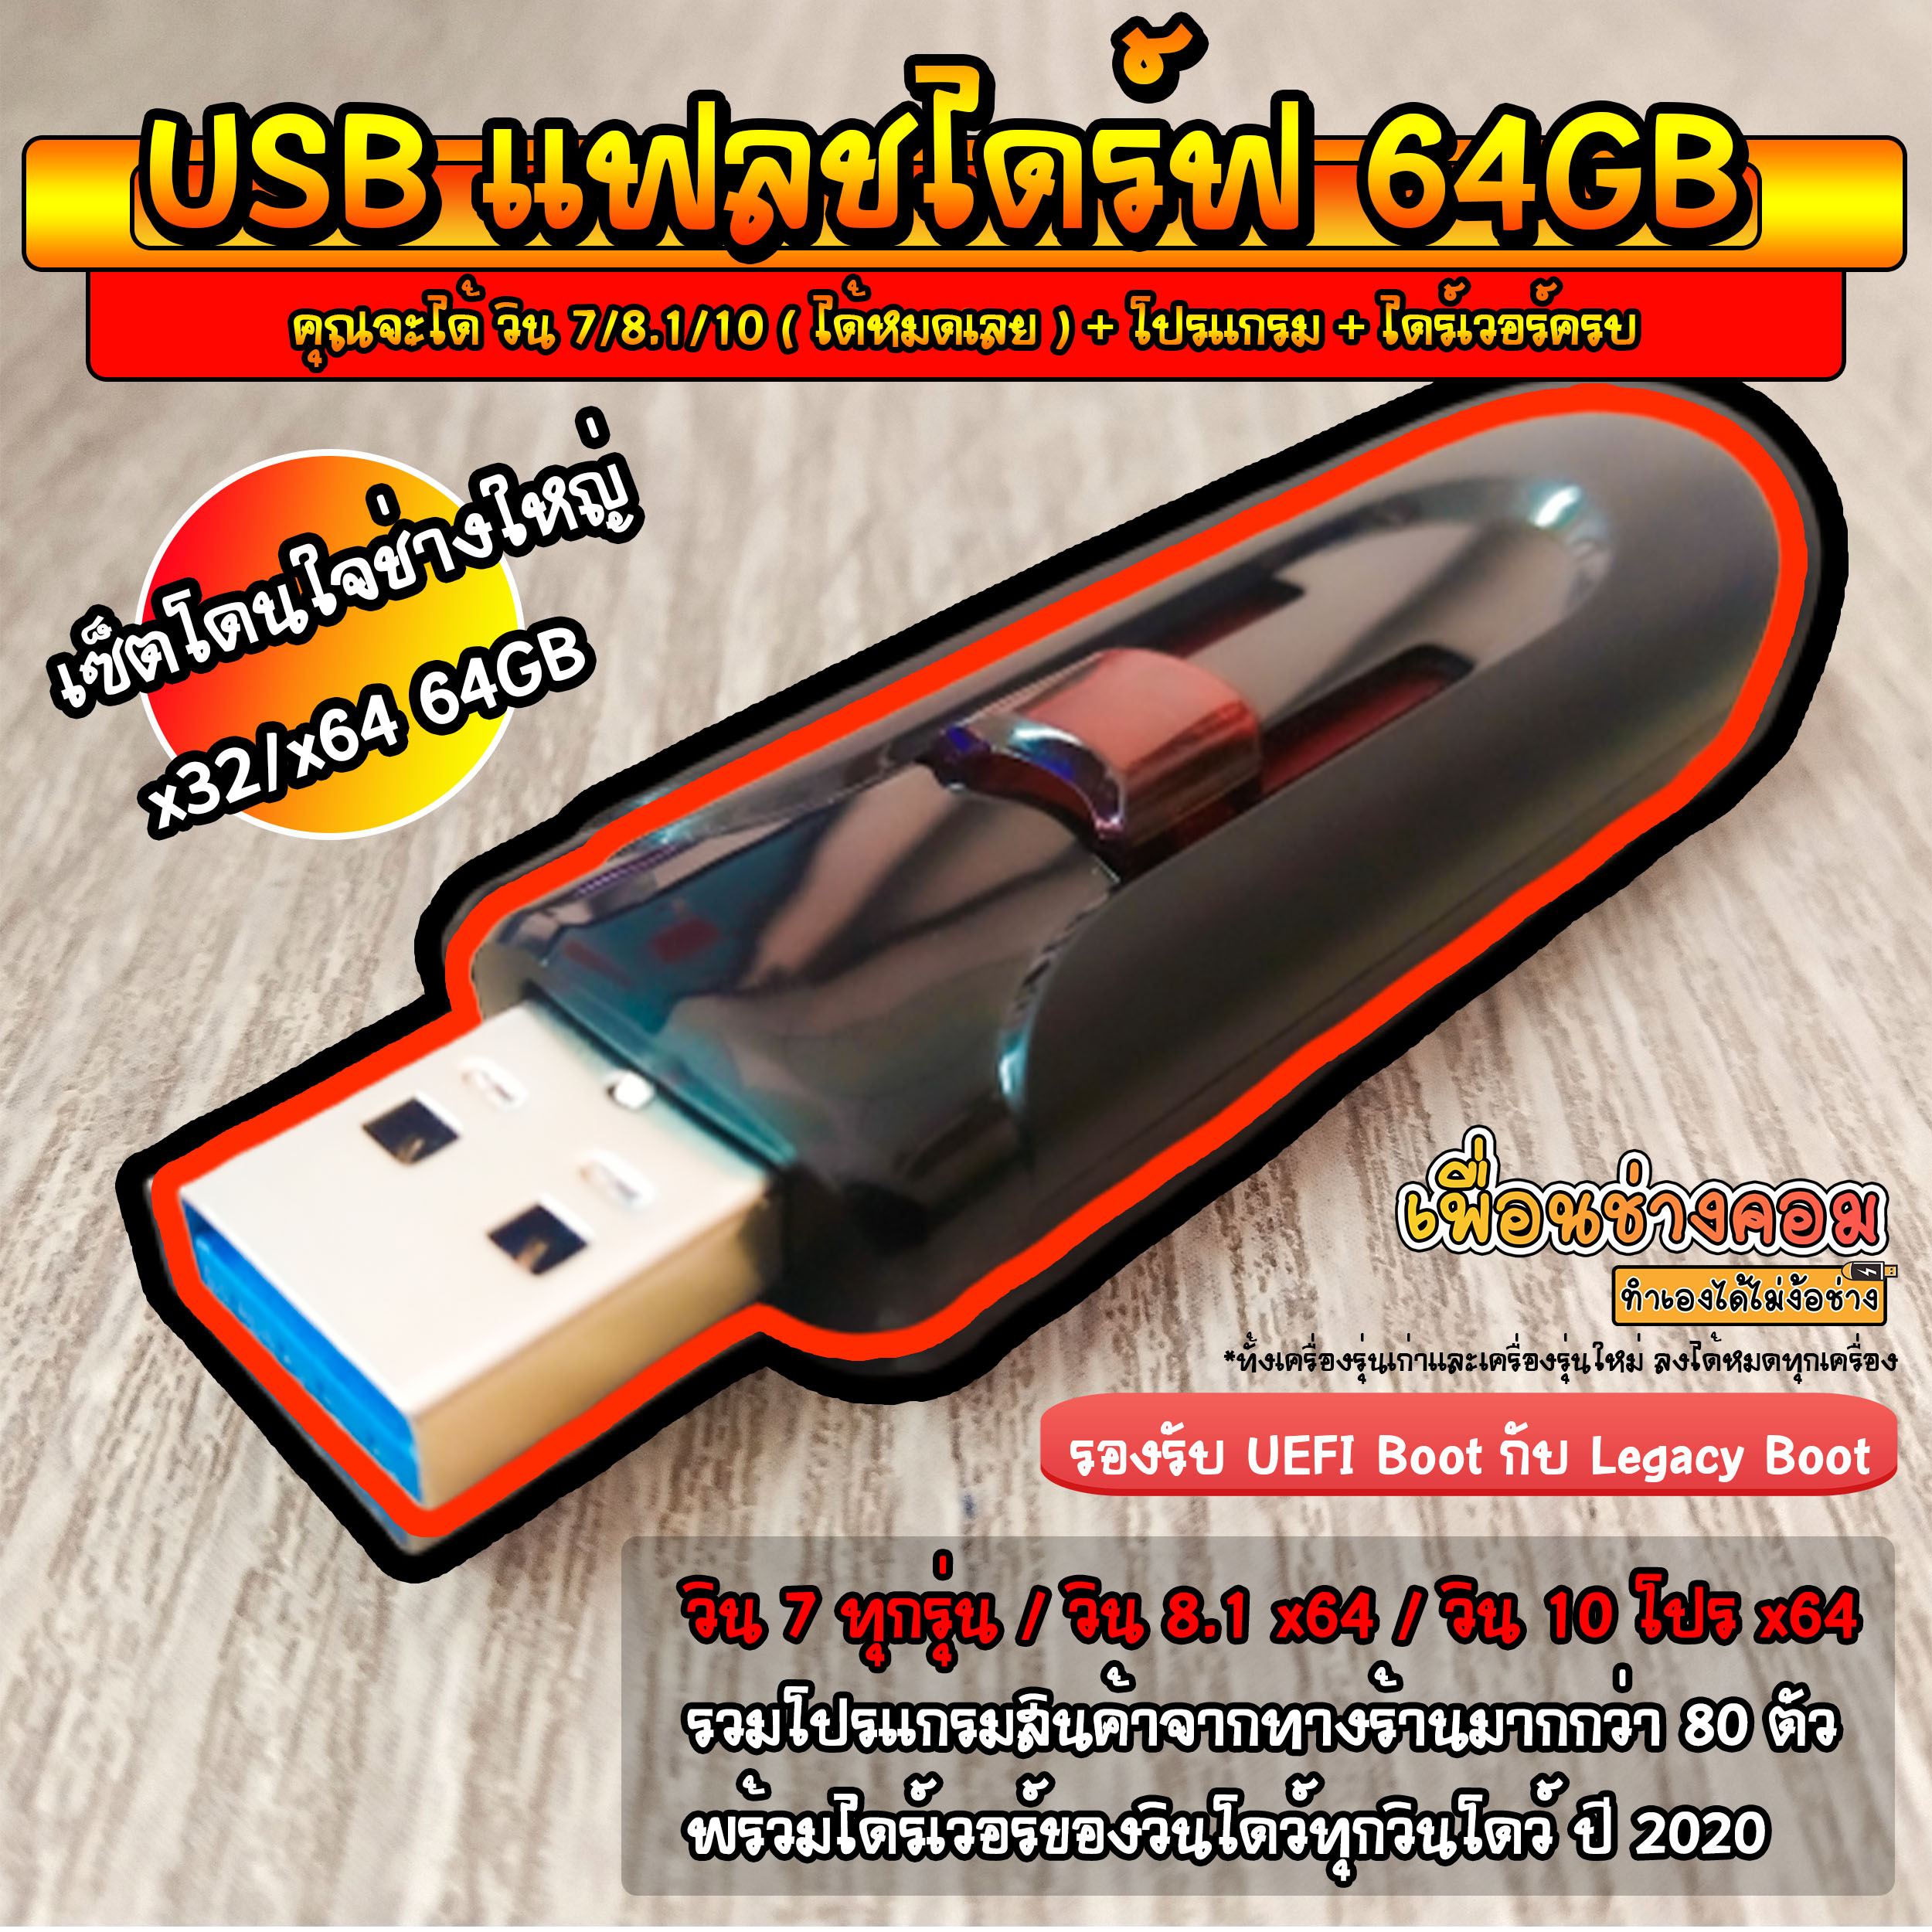 เกี่ยวกับสินค้า USB แฟลชไดร์ฟ วินโดว์ 7AIO/8.1Pro/10Pro + Program + Driver ครบชุดใหญ่ที่สุด (เซ็ตโดนใจช่างใหญ่) | 64GB*